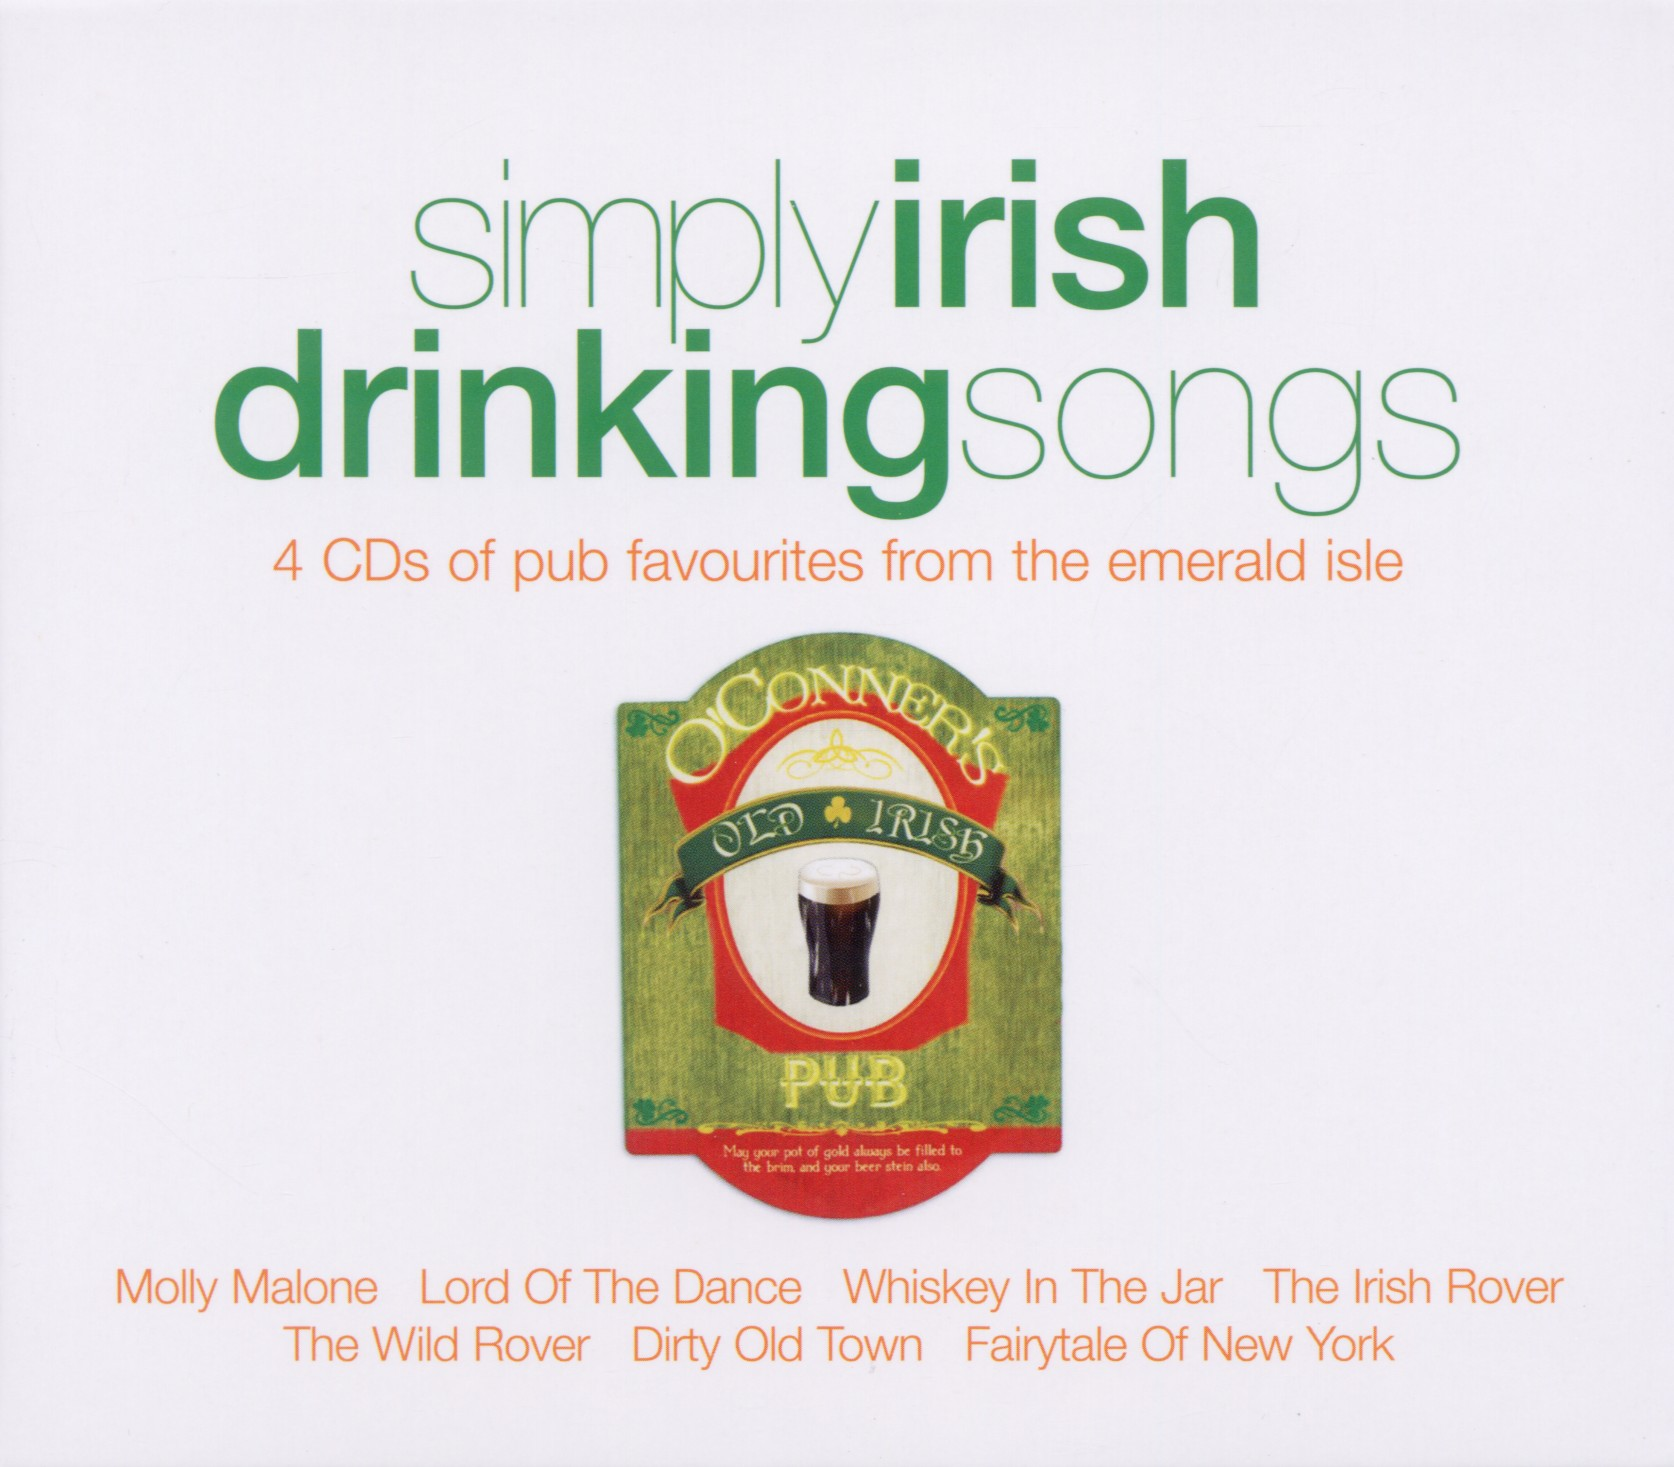 Drinking (CD) Various Songs Simply - - Irish